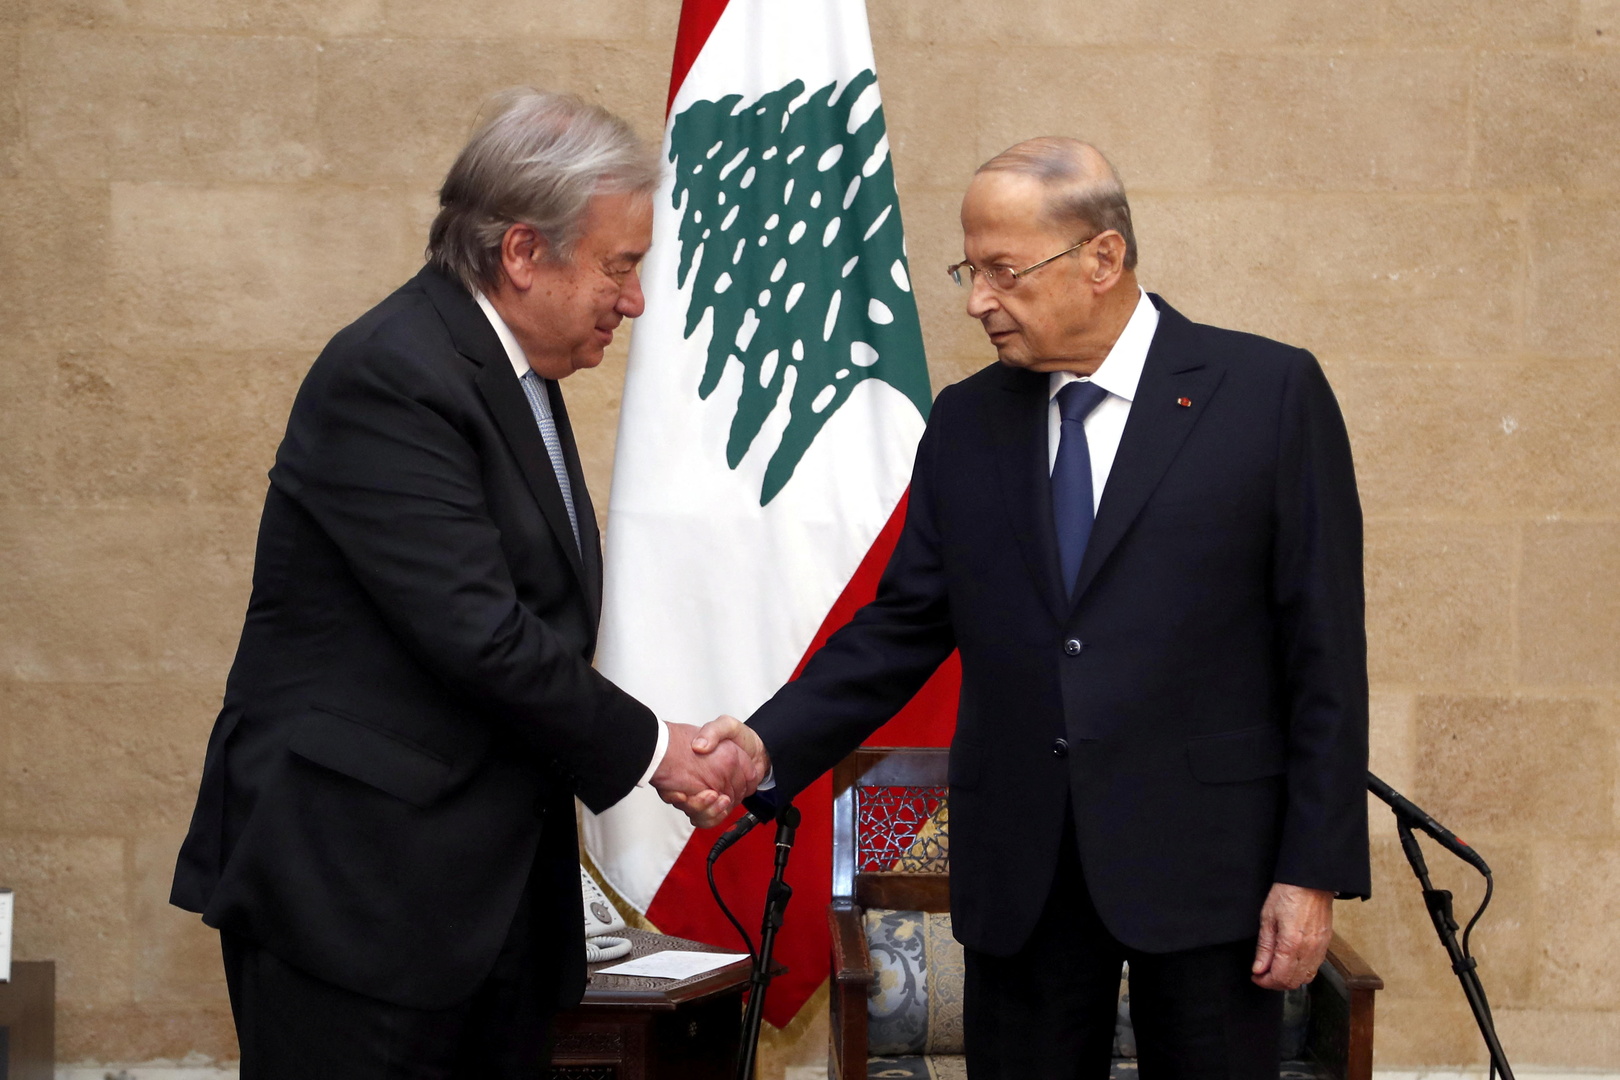 غوتيريش: إني لمحزون على لبنان وحاله تنفطر له القلوب